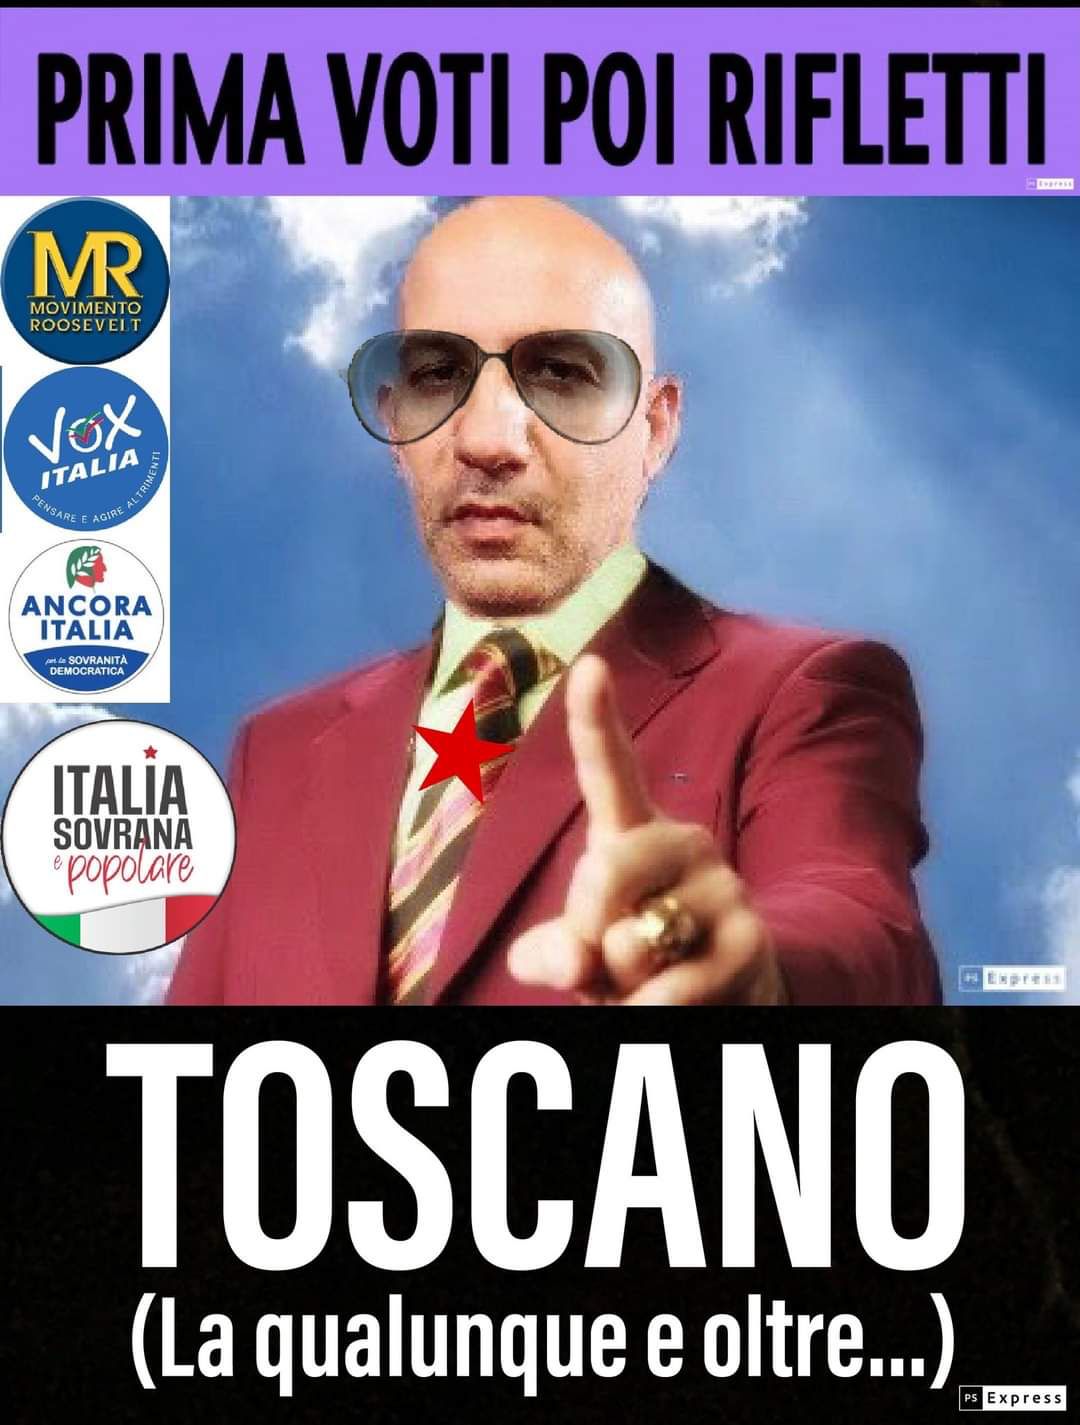 Francesco Toscano: Un Agente Infiltrato Per Spaccare La Resistenza